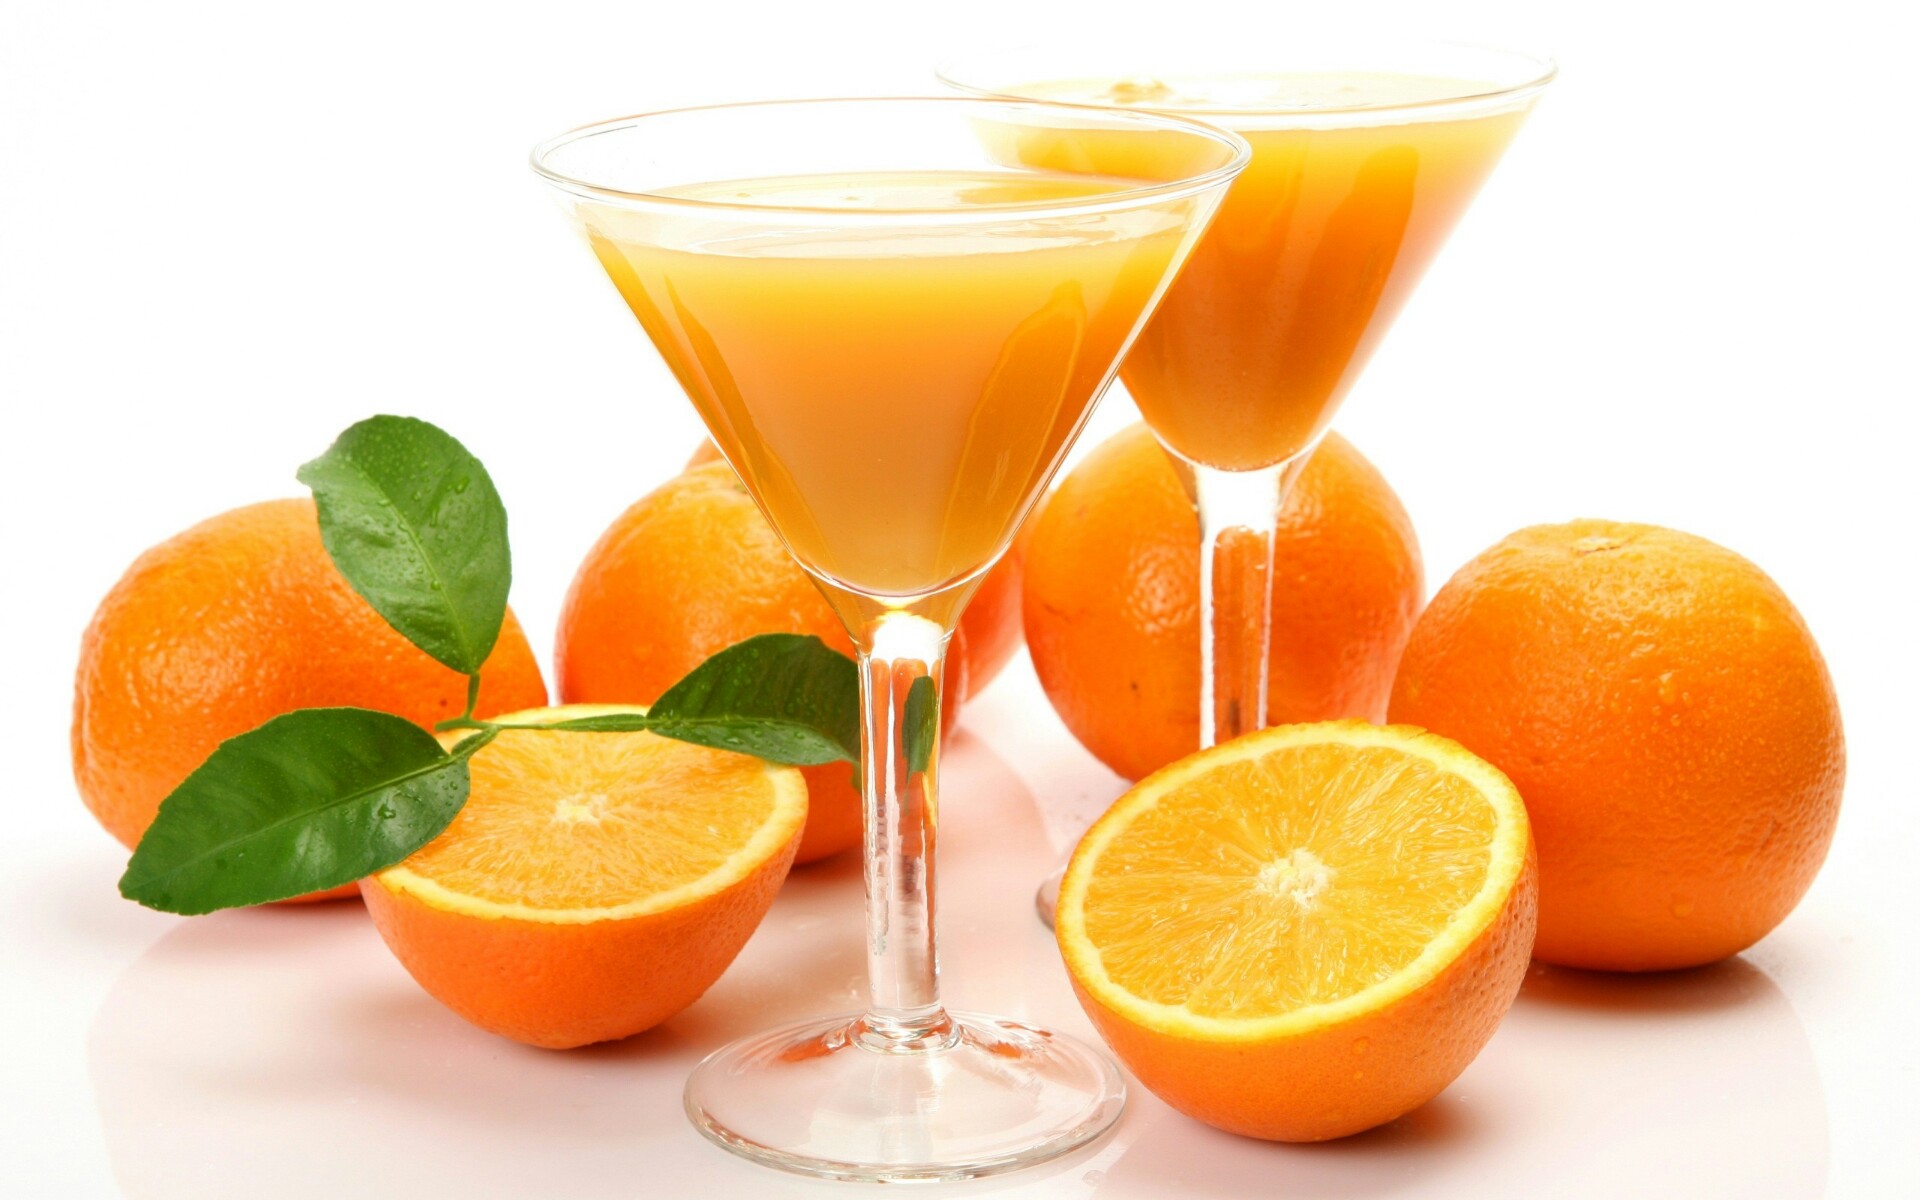 HD Wallpaper Oranges Juice-1920×1200 1920x1200